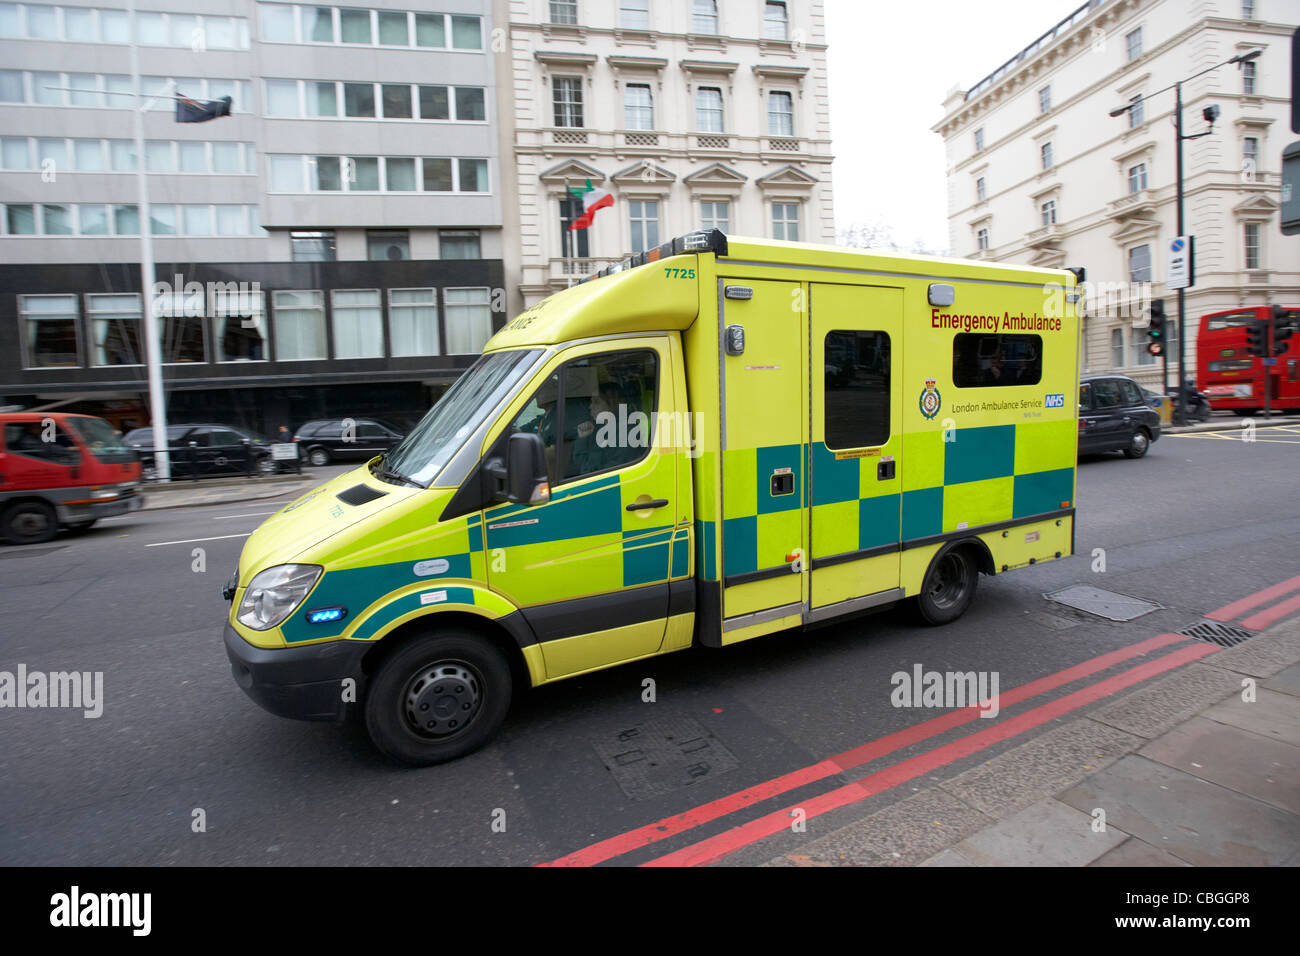 London ambulance service accélération du véhicule à travers des rues de Londres Angleterre Royaume-Uni Royaume-Uni Banque D'Images